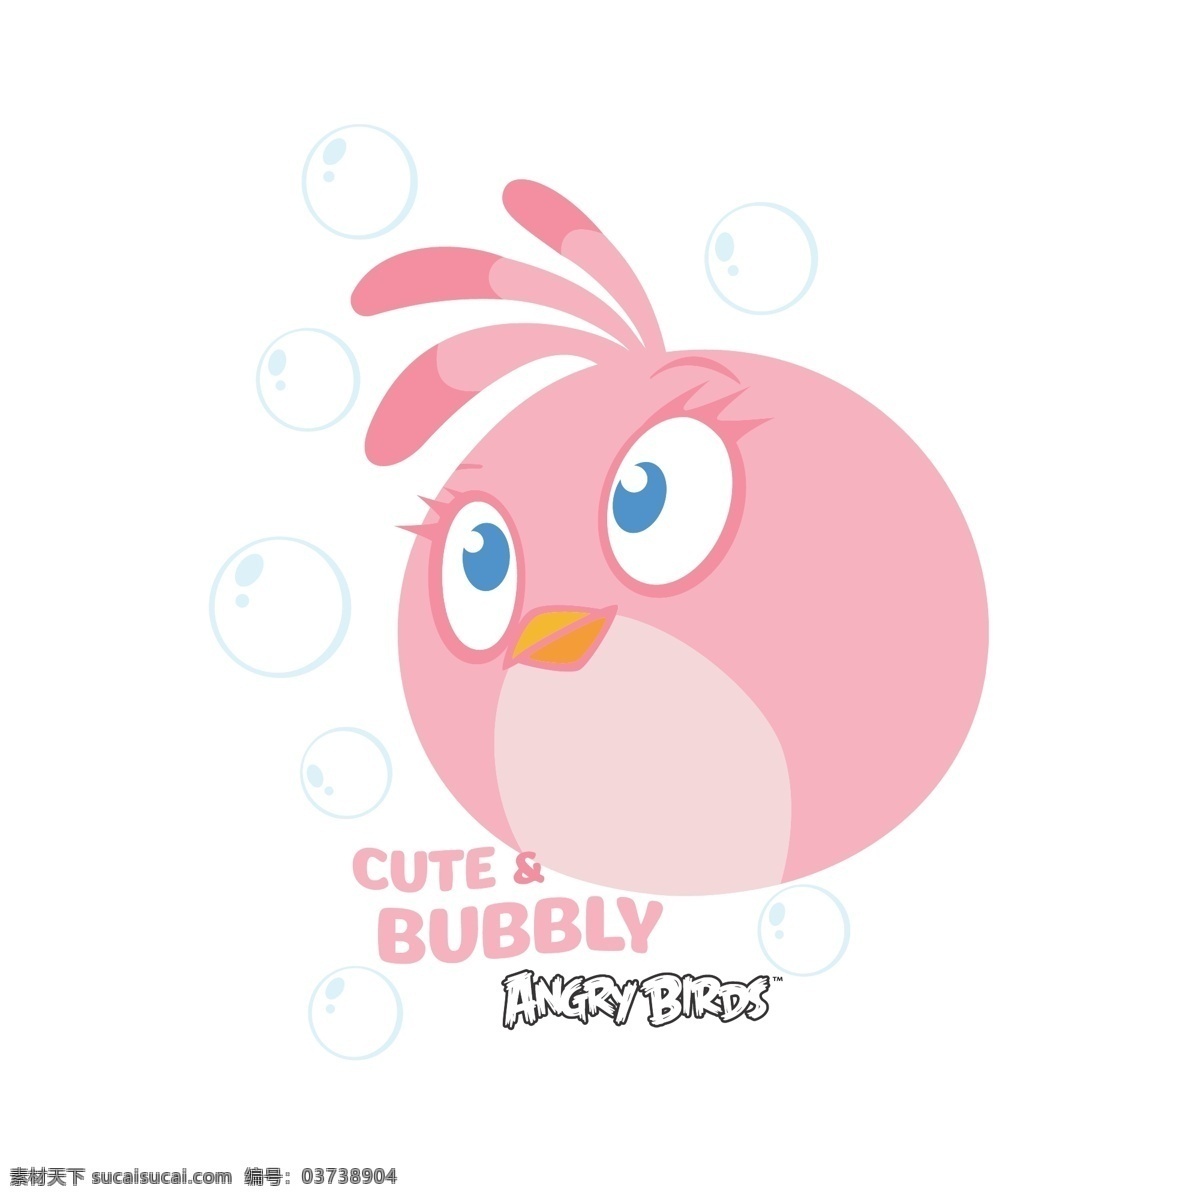 愤怒的小鸟 可爱 卡通 游戏 矢量图 cute bubbly 动漫动画 动漫人物